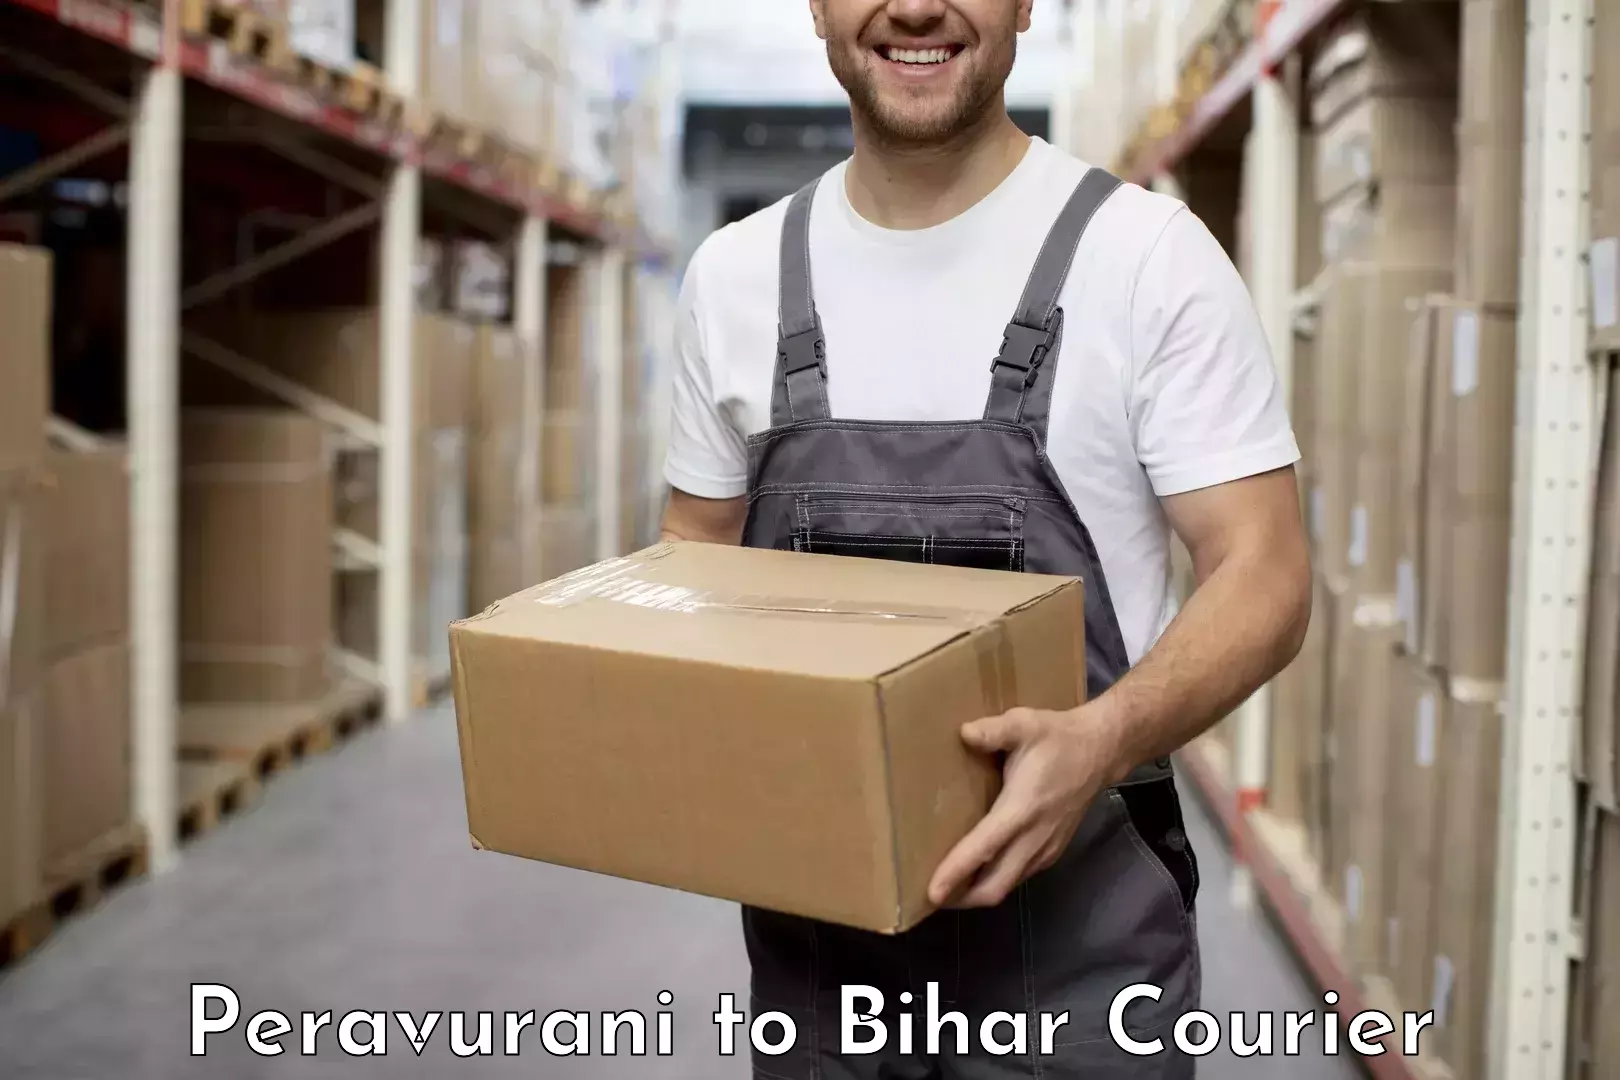 Local delivery service Peravurani to Bihar